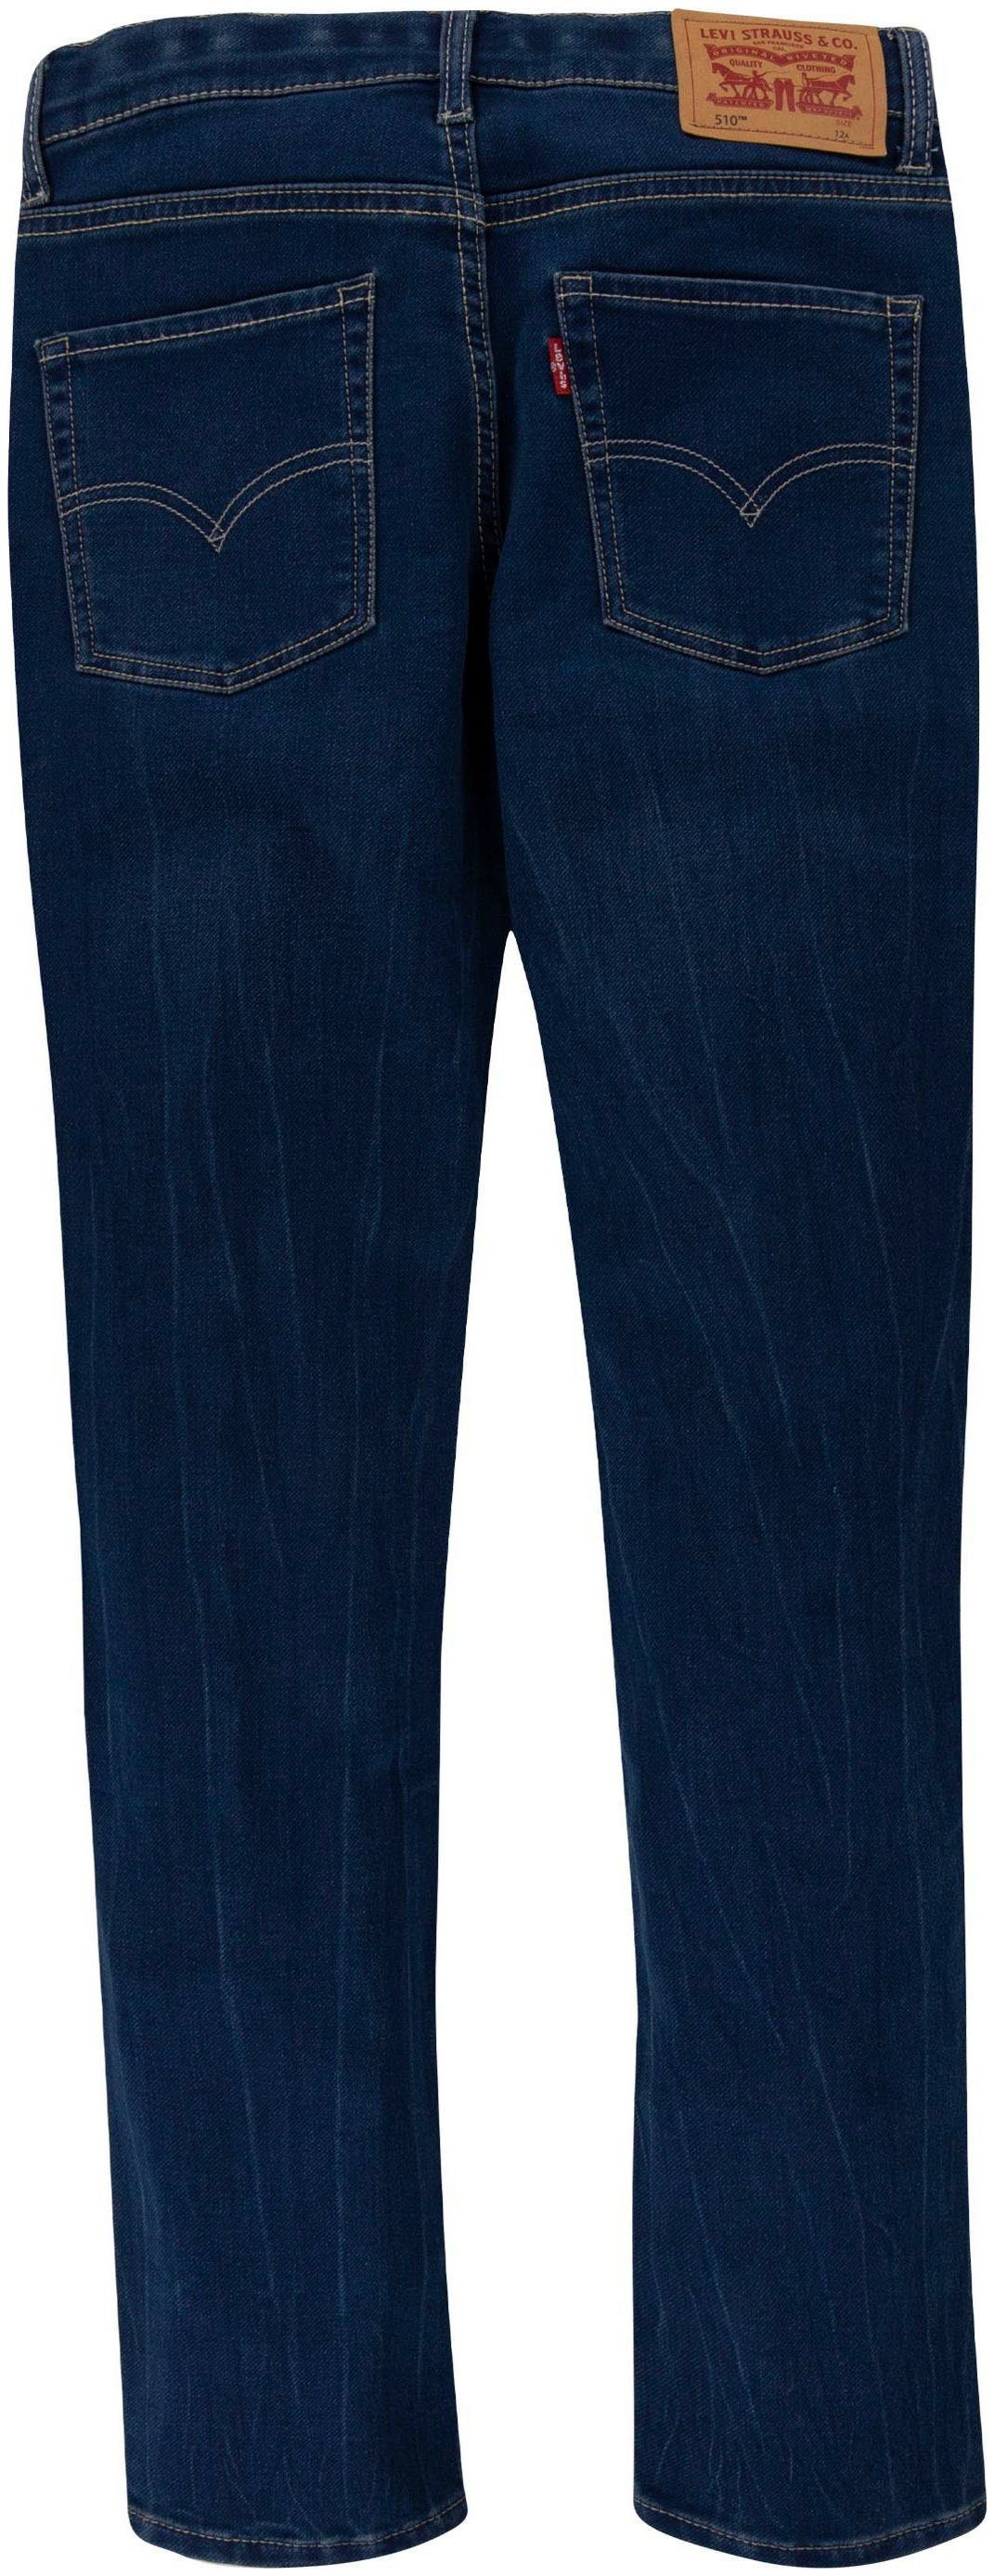 Levi's® Kids Skinny-fit-Jeans 510 SKINNY used for indigo denim JEANS dark BOYS FIT